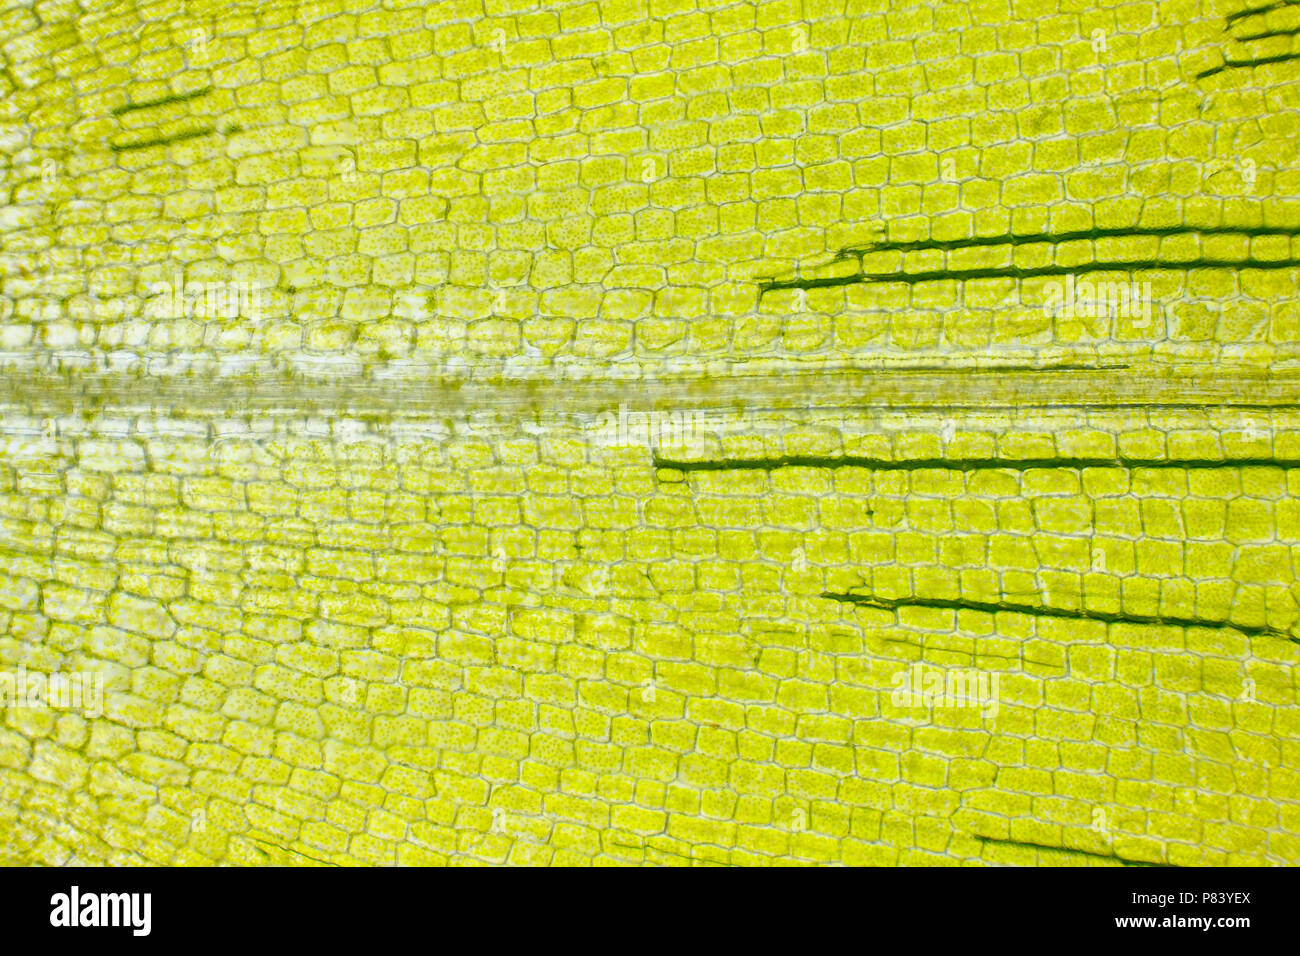 Mikroskopische Ansicht der Kanadischen waterweed (Elodea canadensis) Blatt.  Hellfeldbeleuchtungen Stockfotografie - Alamy